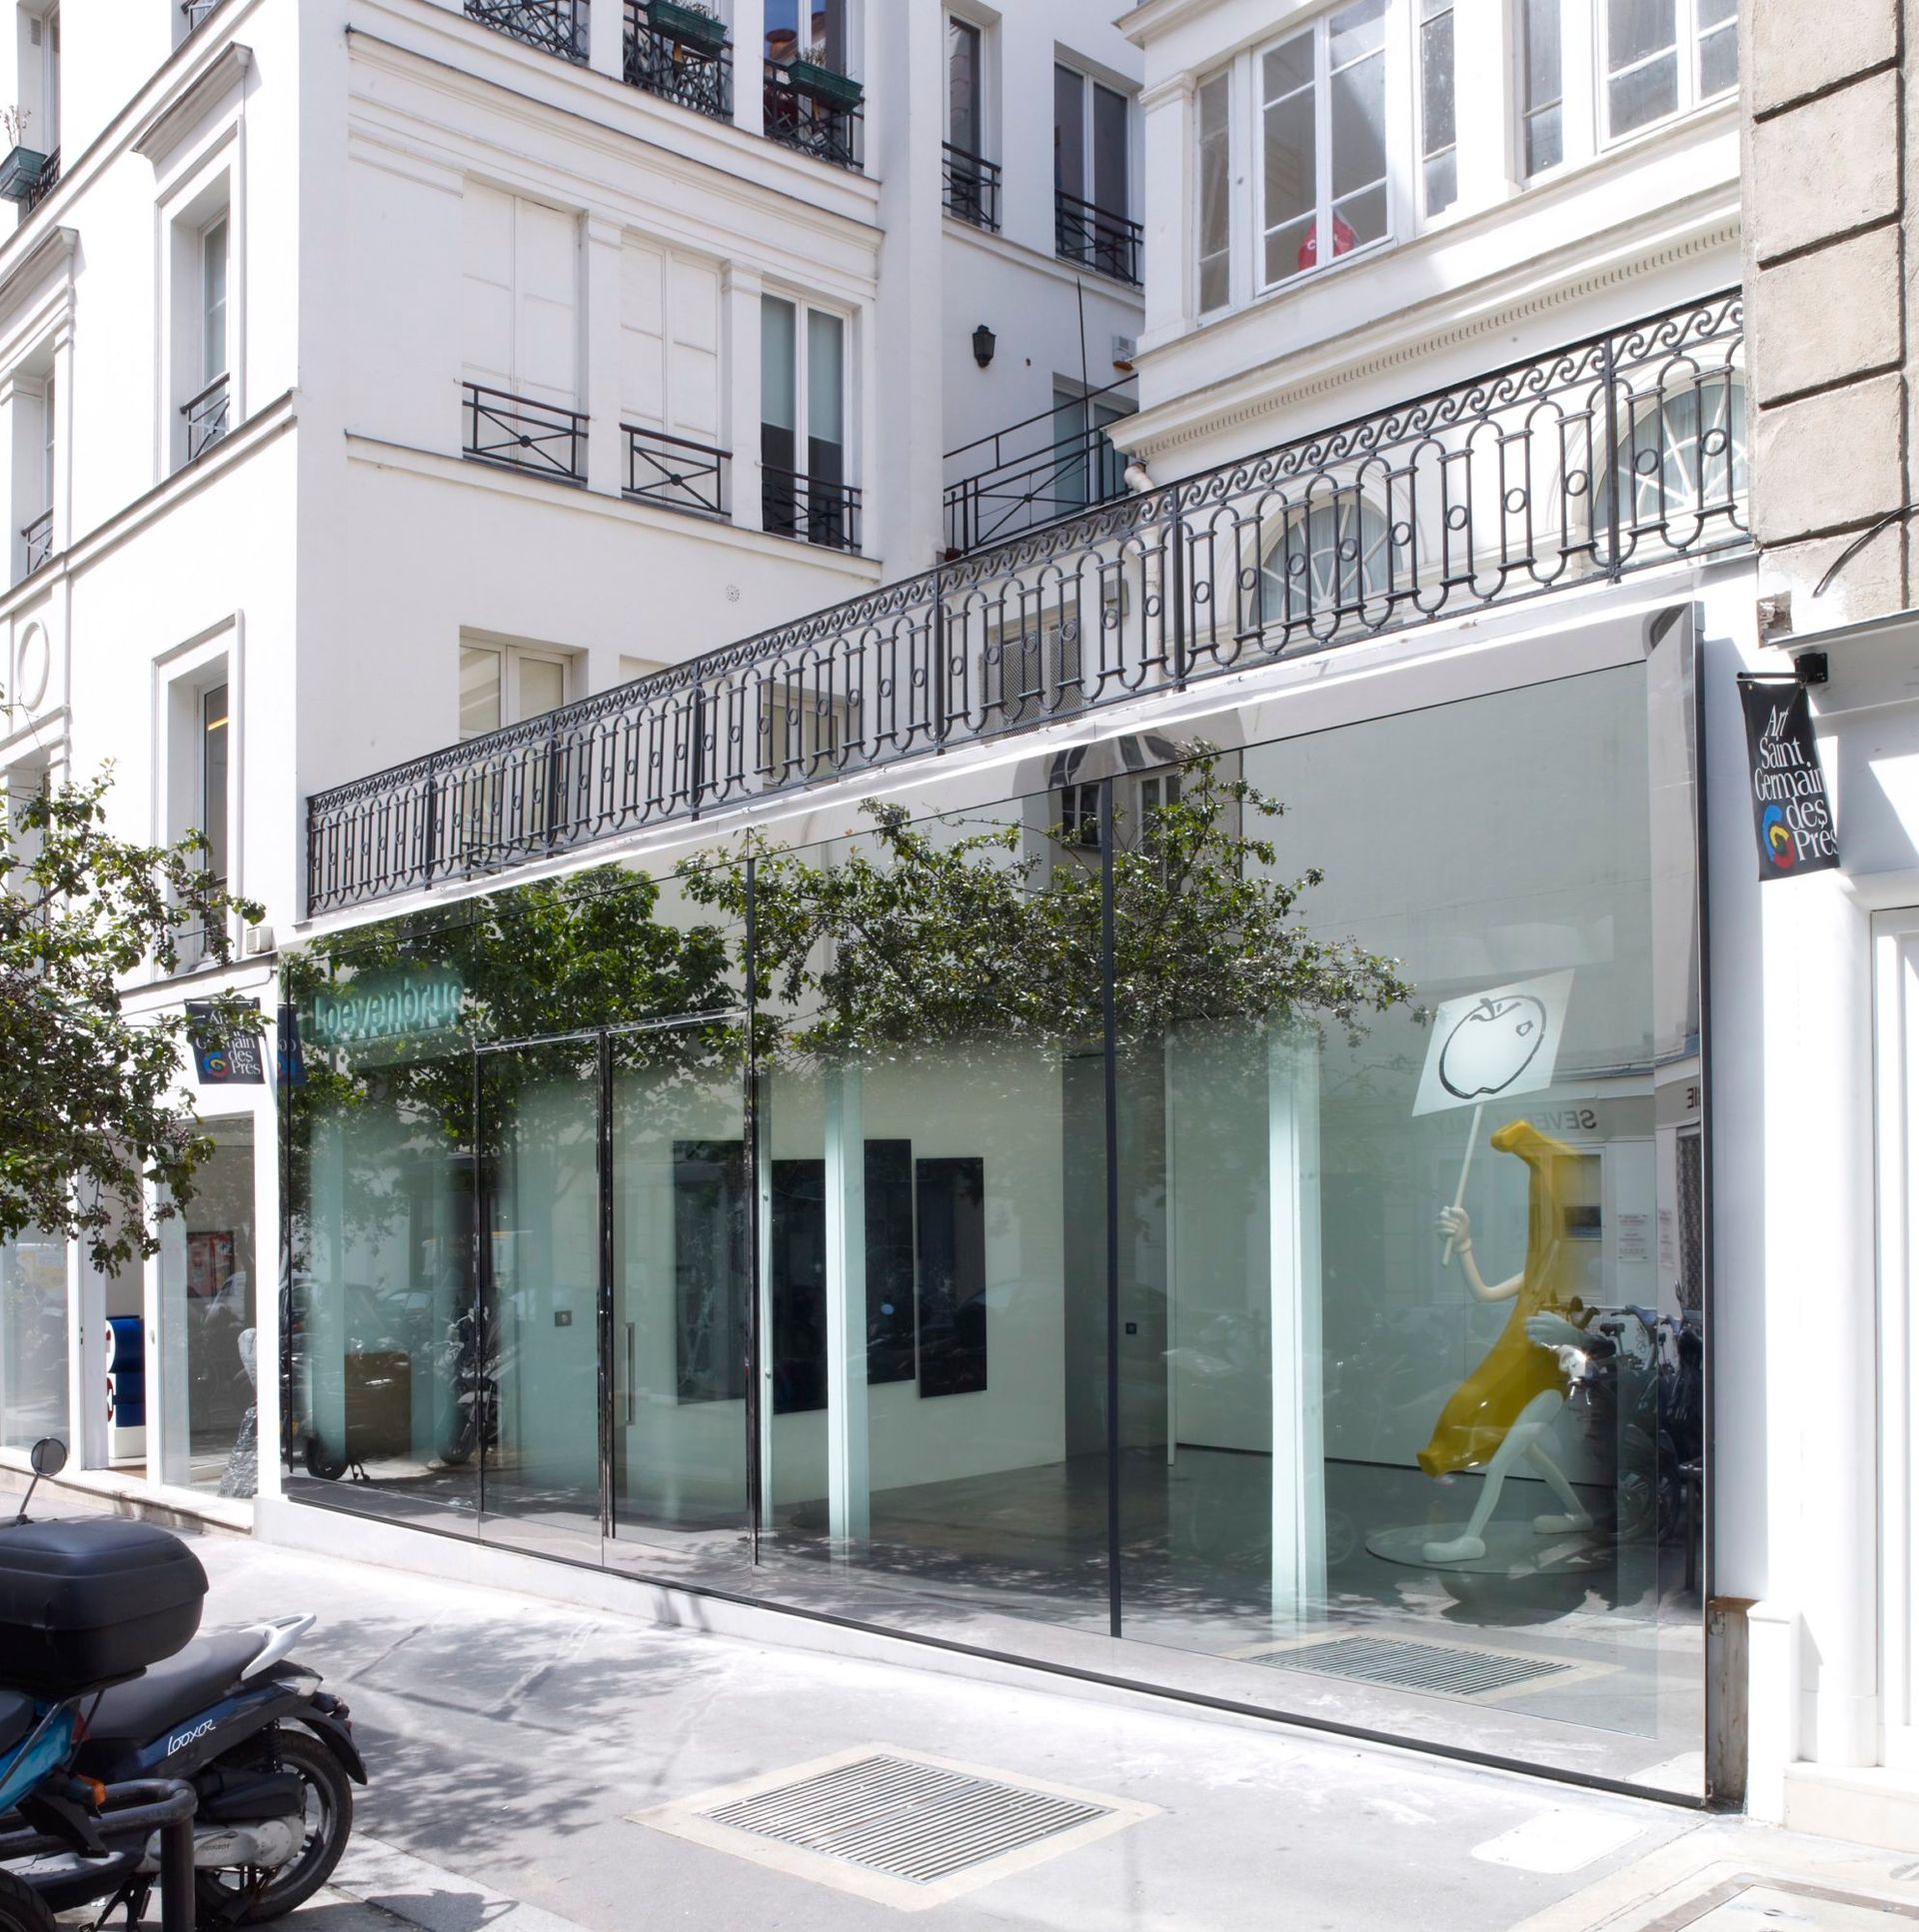 Façade de la Galerie Loevenbruck, rue Jacques Callot, dans le 6e arrondissement de Paris, aménagé par l’Atelier du Pont. Courtesy Galerie Loevenbruck